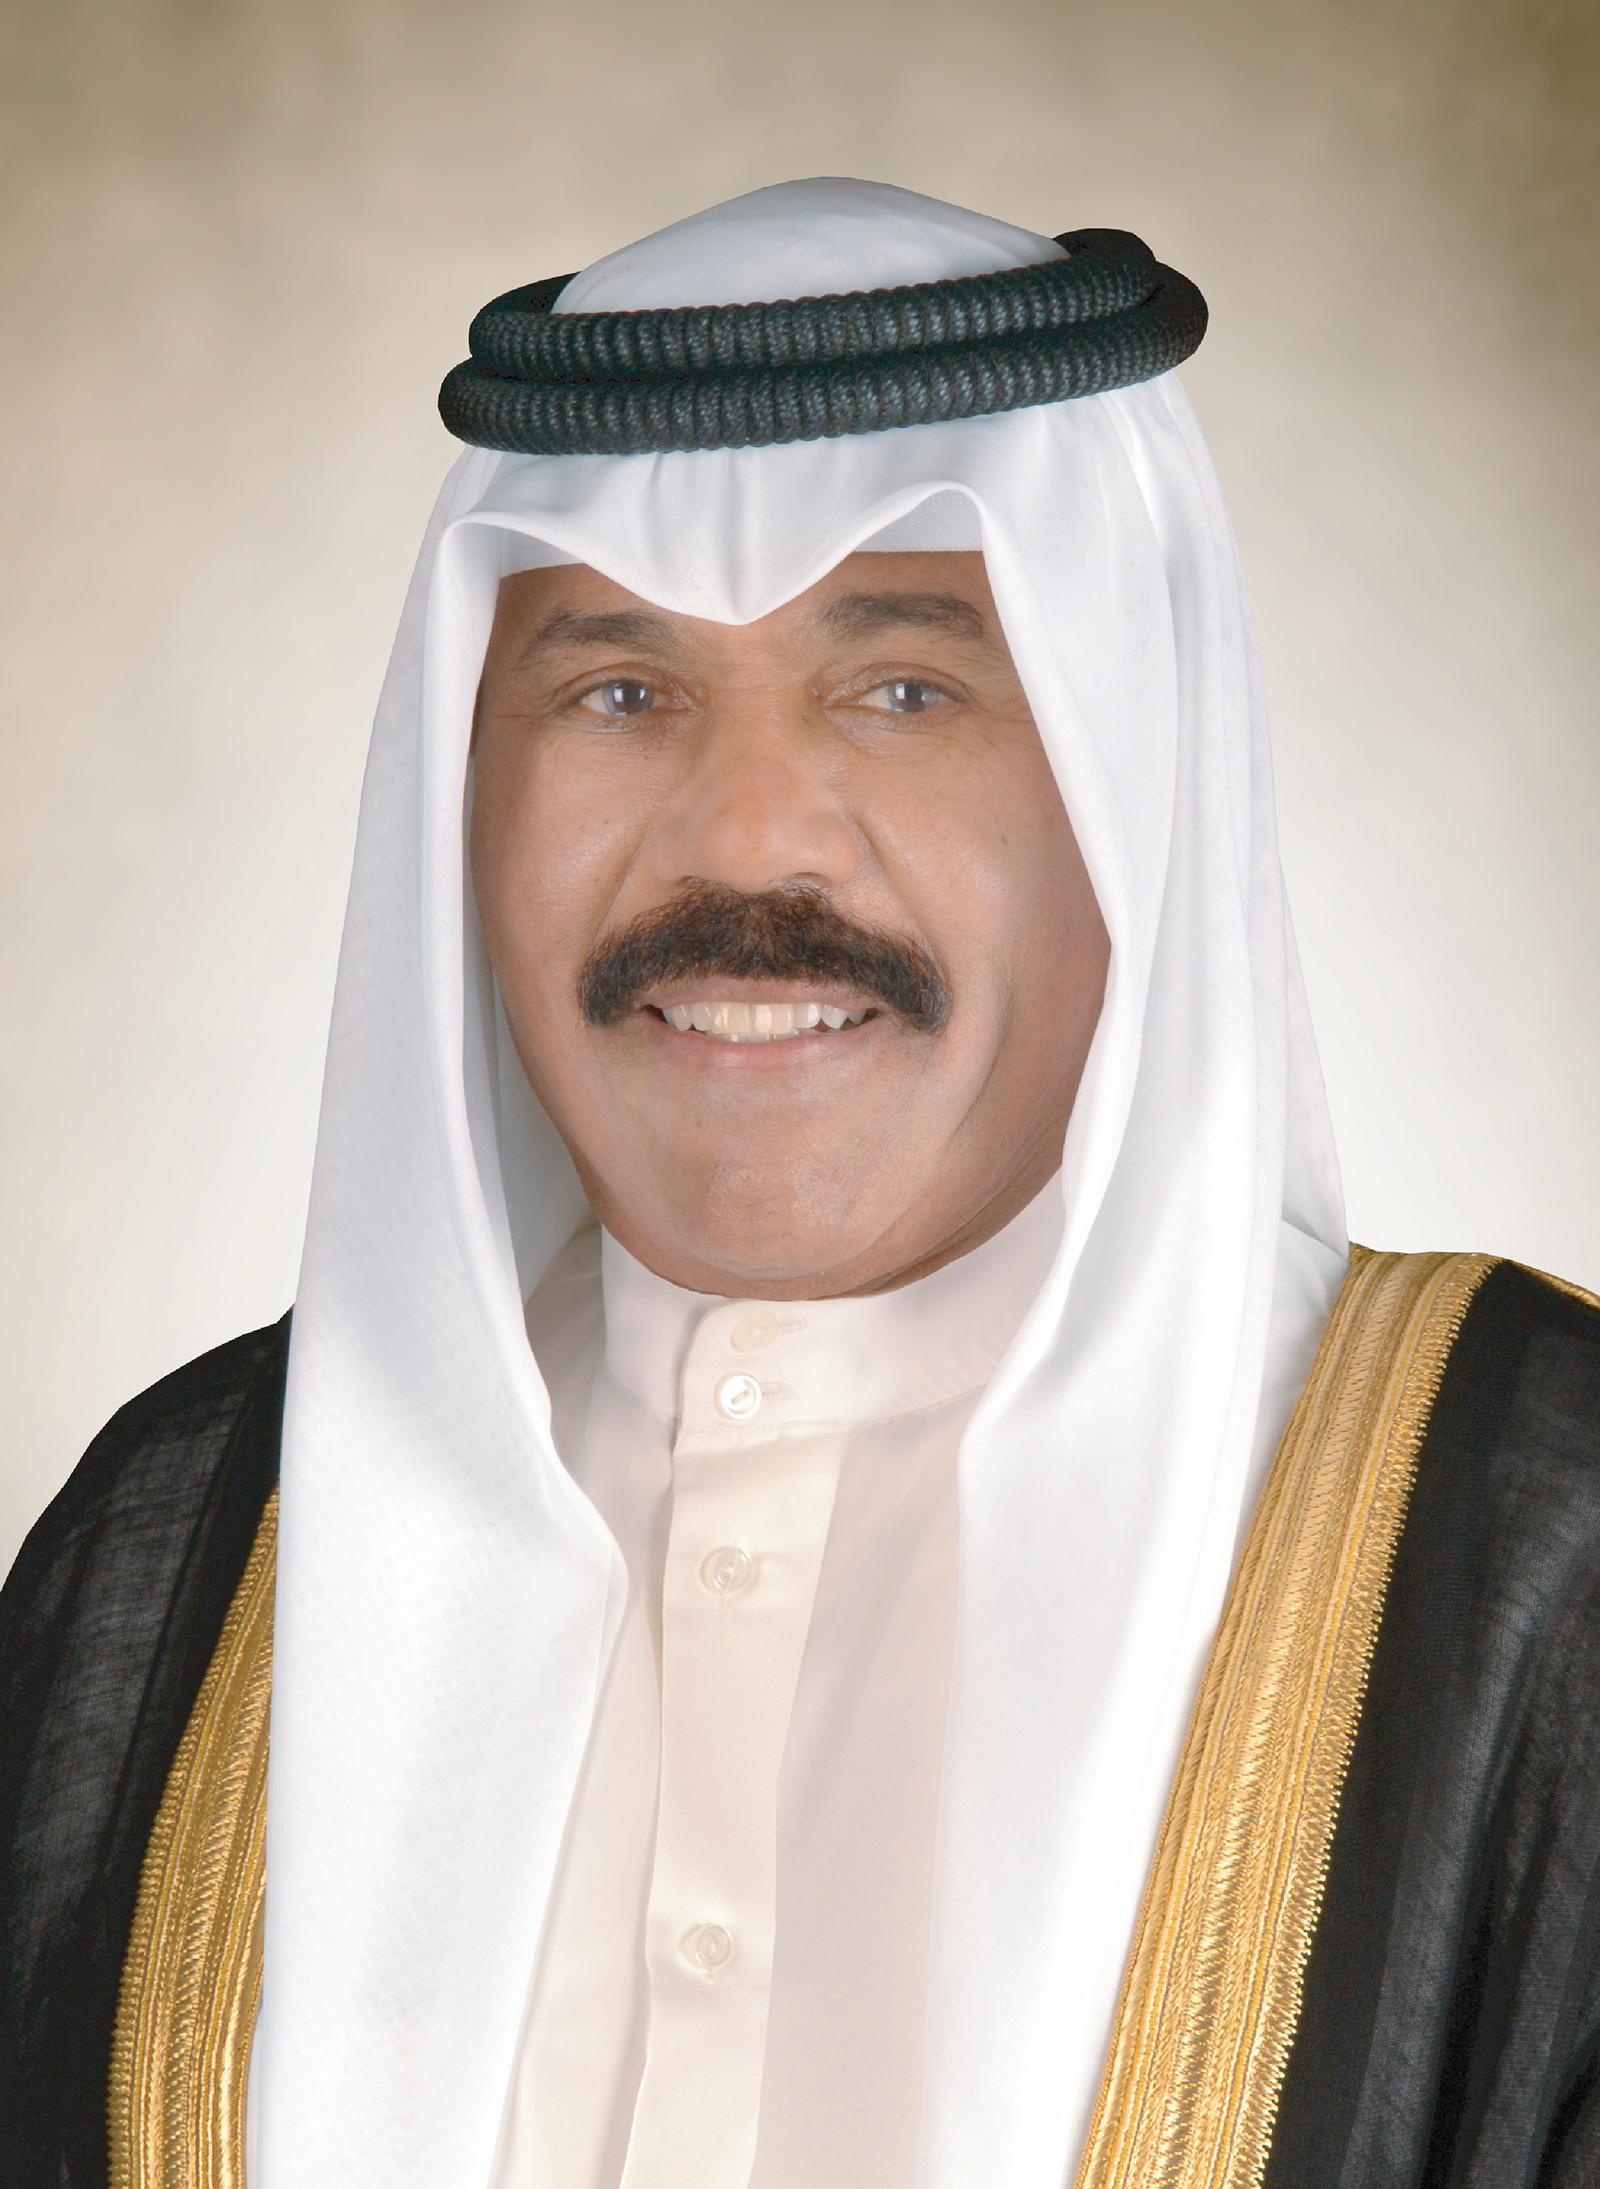 سمو أمير البلاد يتلقى اتصالا هاتفيا من ملك البحرين للتهنئة بحلول شهر رمضان المبارك